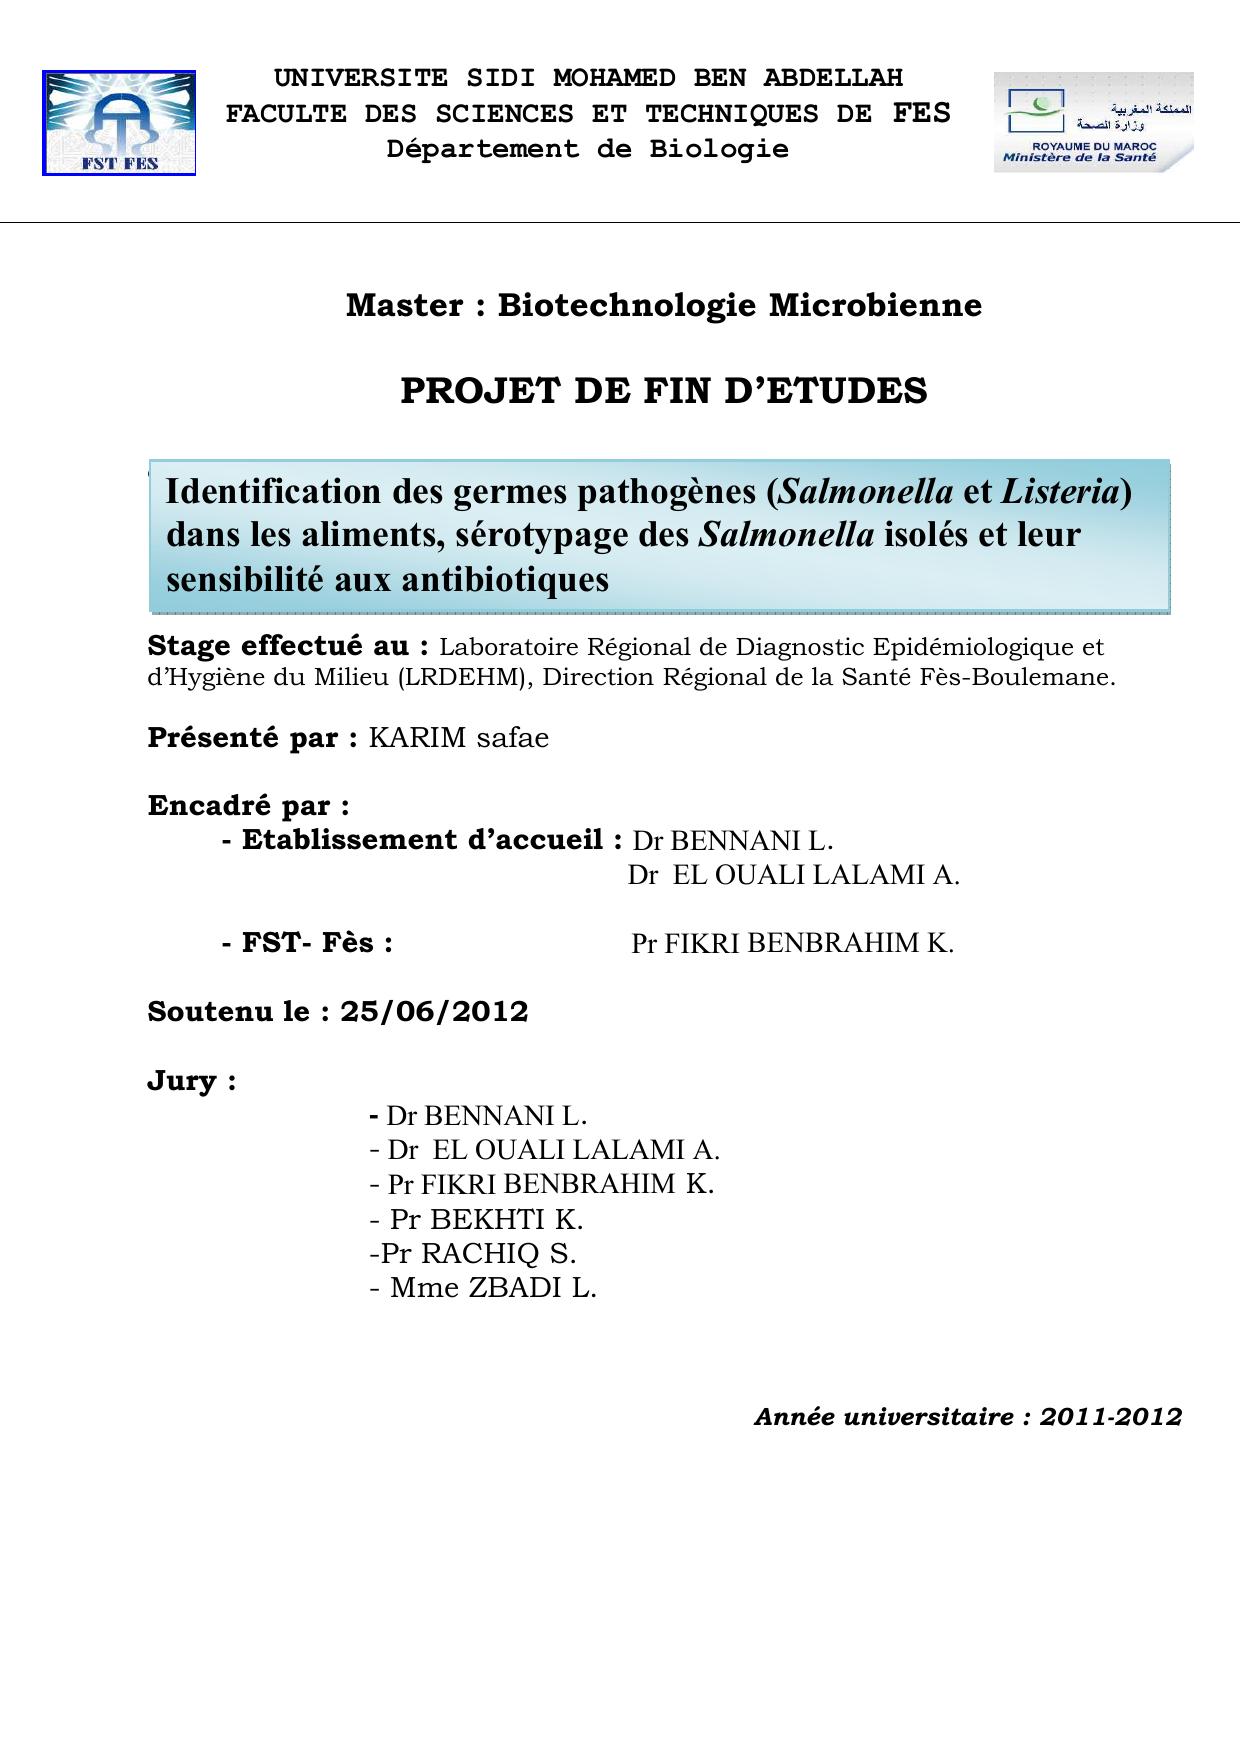 Identification des germes pathogènes (Salmonella et Listeria) dans les aliments, sérotypage des Salmonella isolés et leur sensibilité aux antibiotiques